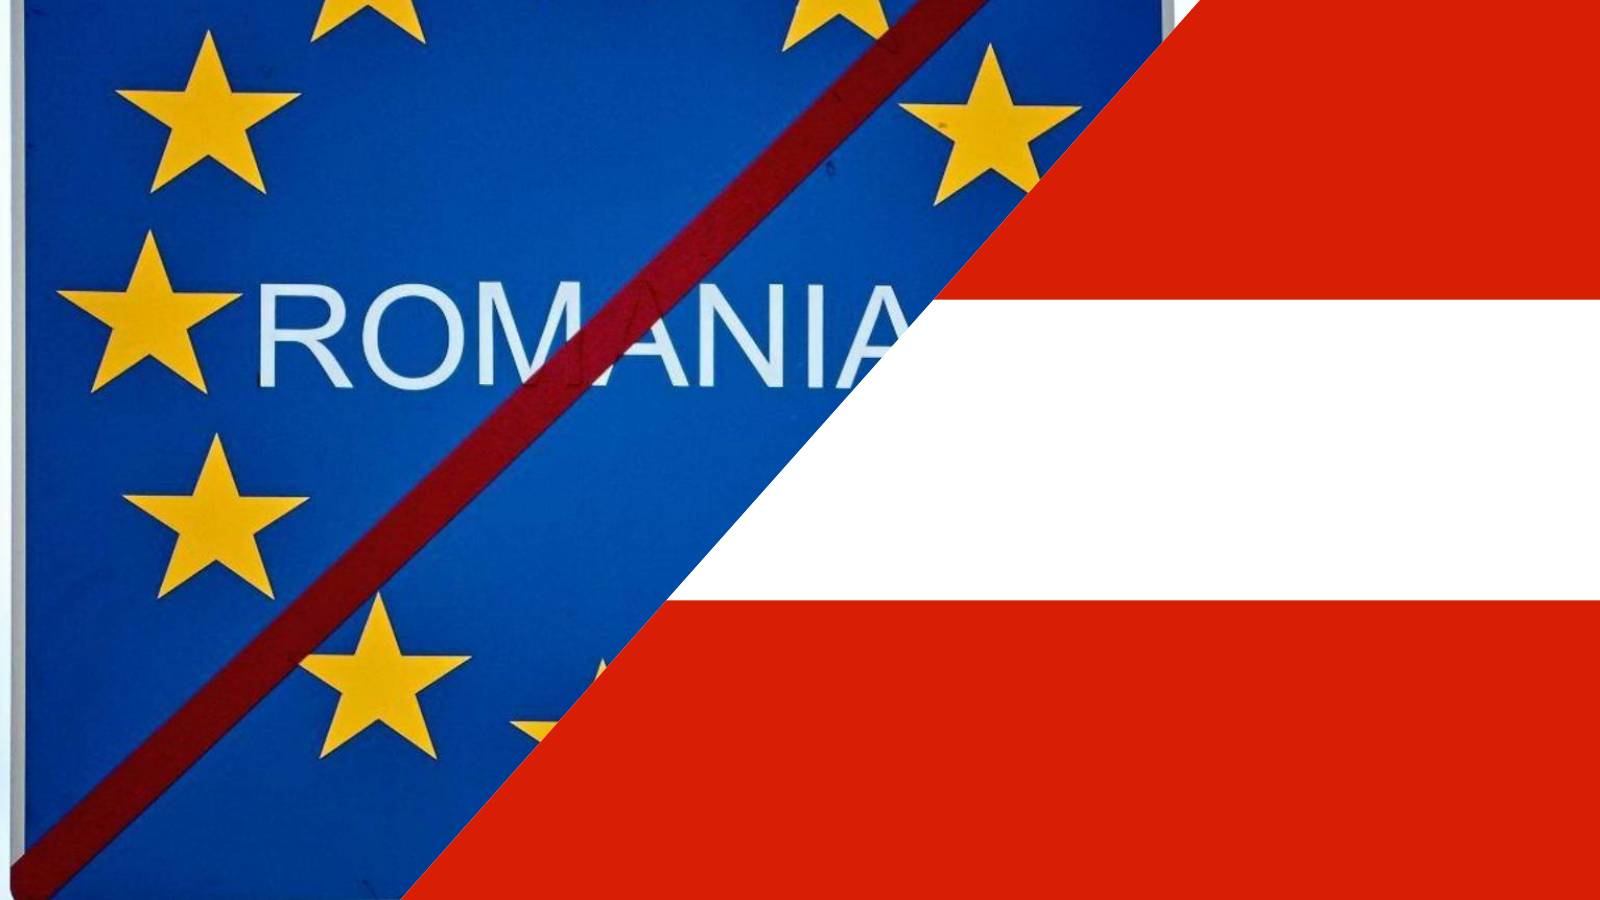 L'Austria condivide il motivo dell'annuncio del Vicecancelliere di bloccare l'adesione della Romania a Schengen